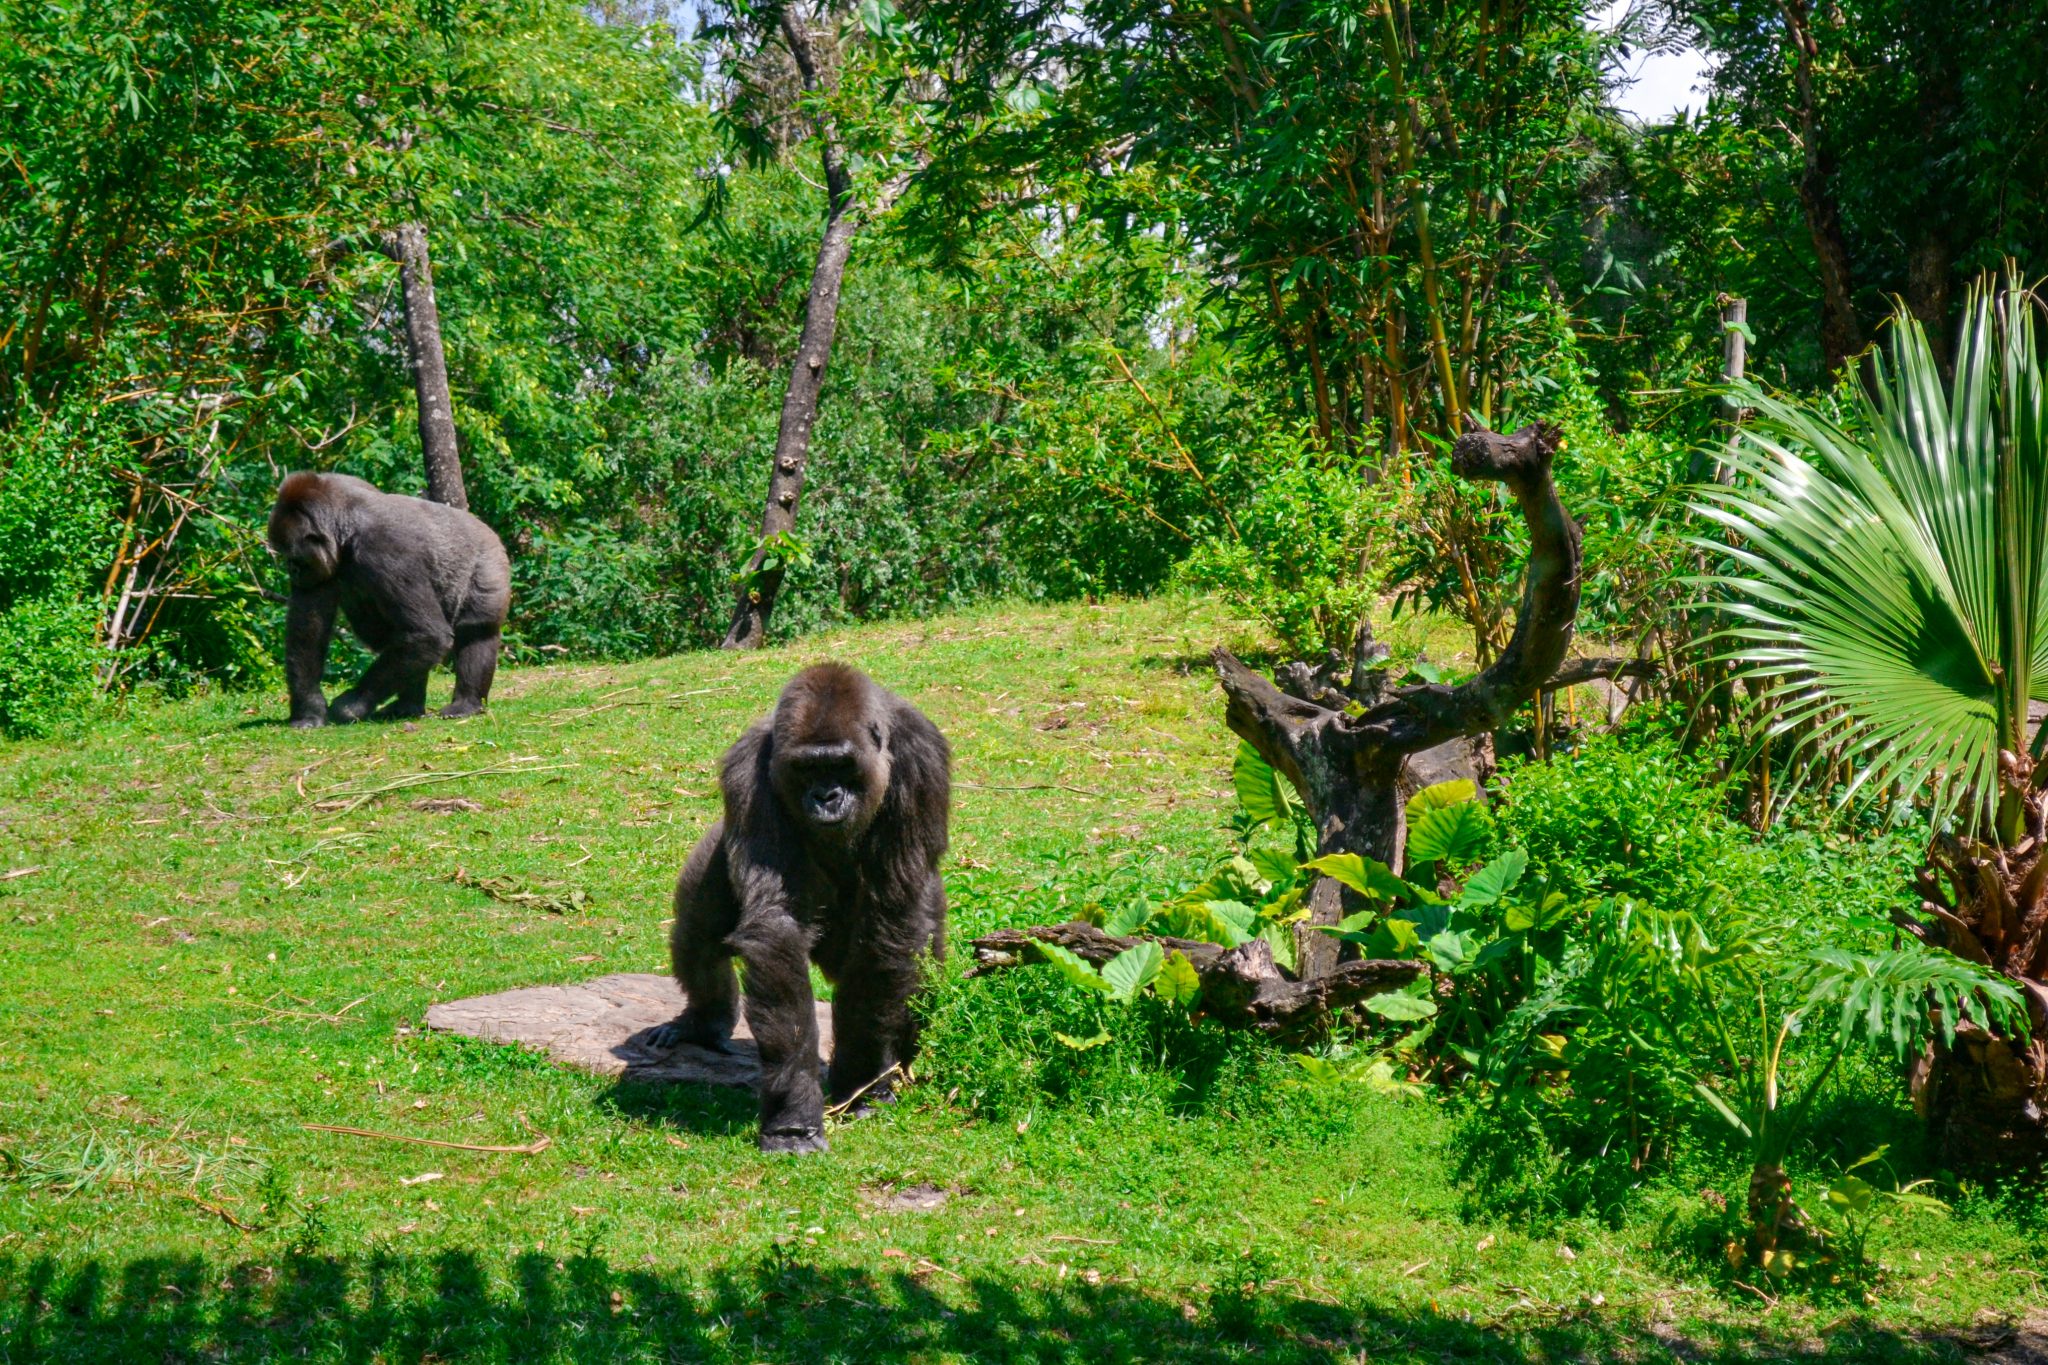 Two gorillas in a safari exhibit